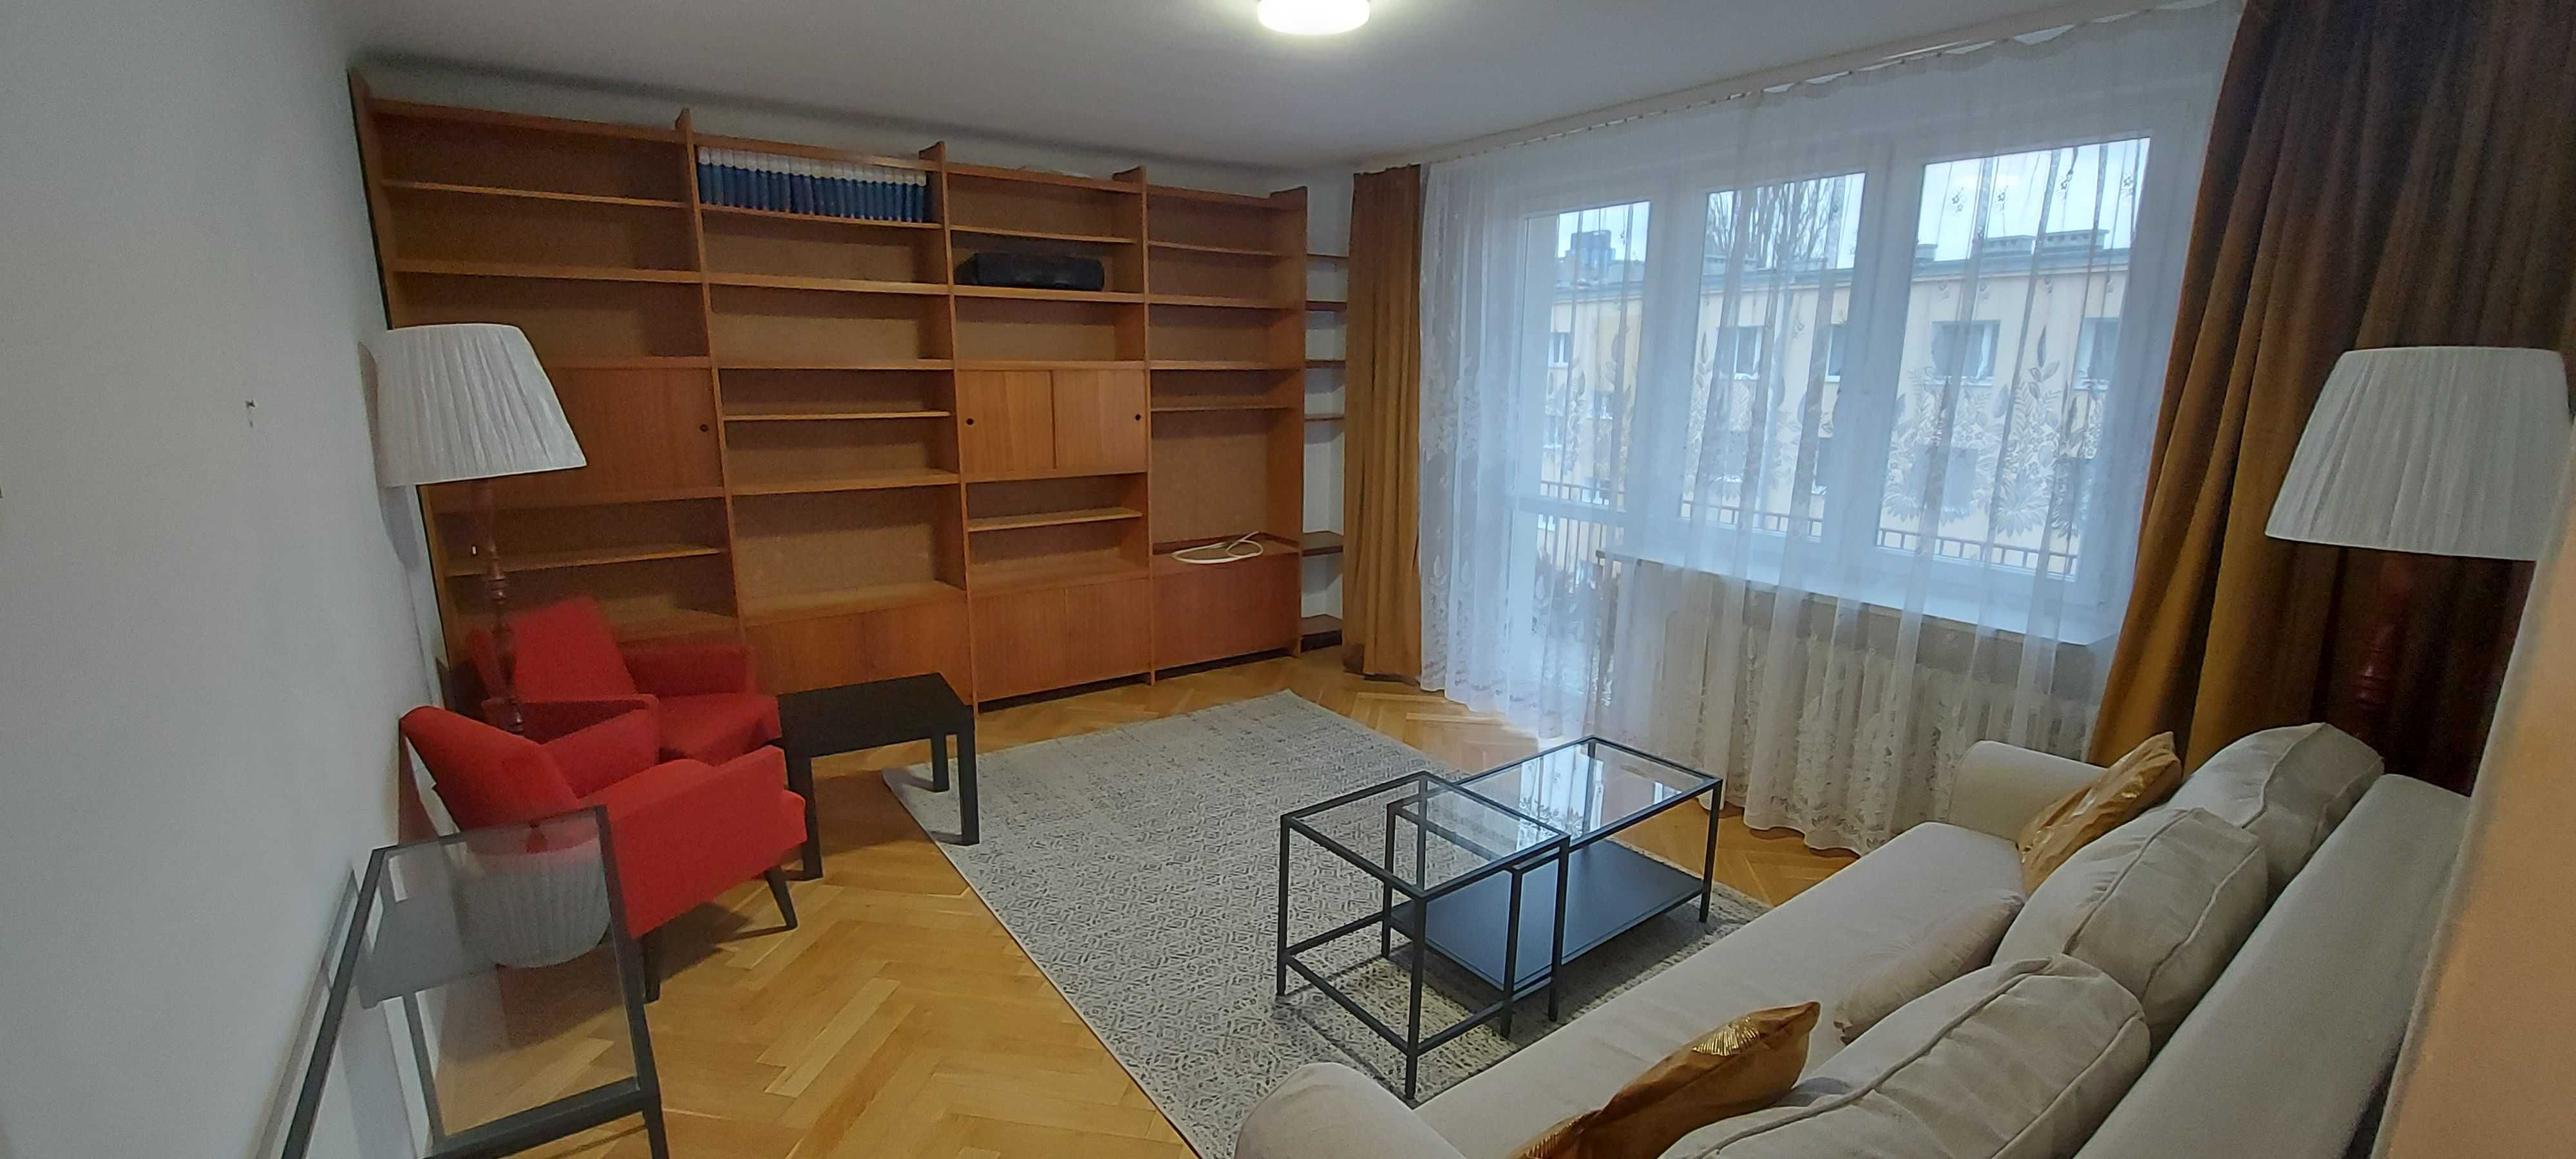 Mieszkanie do wynajęcia, Warszawa Wola, 58 m2, 3 pokoje, blisko metra